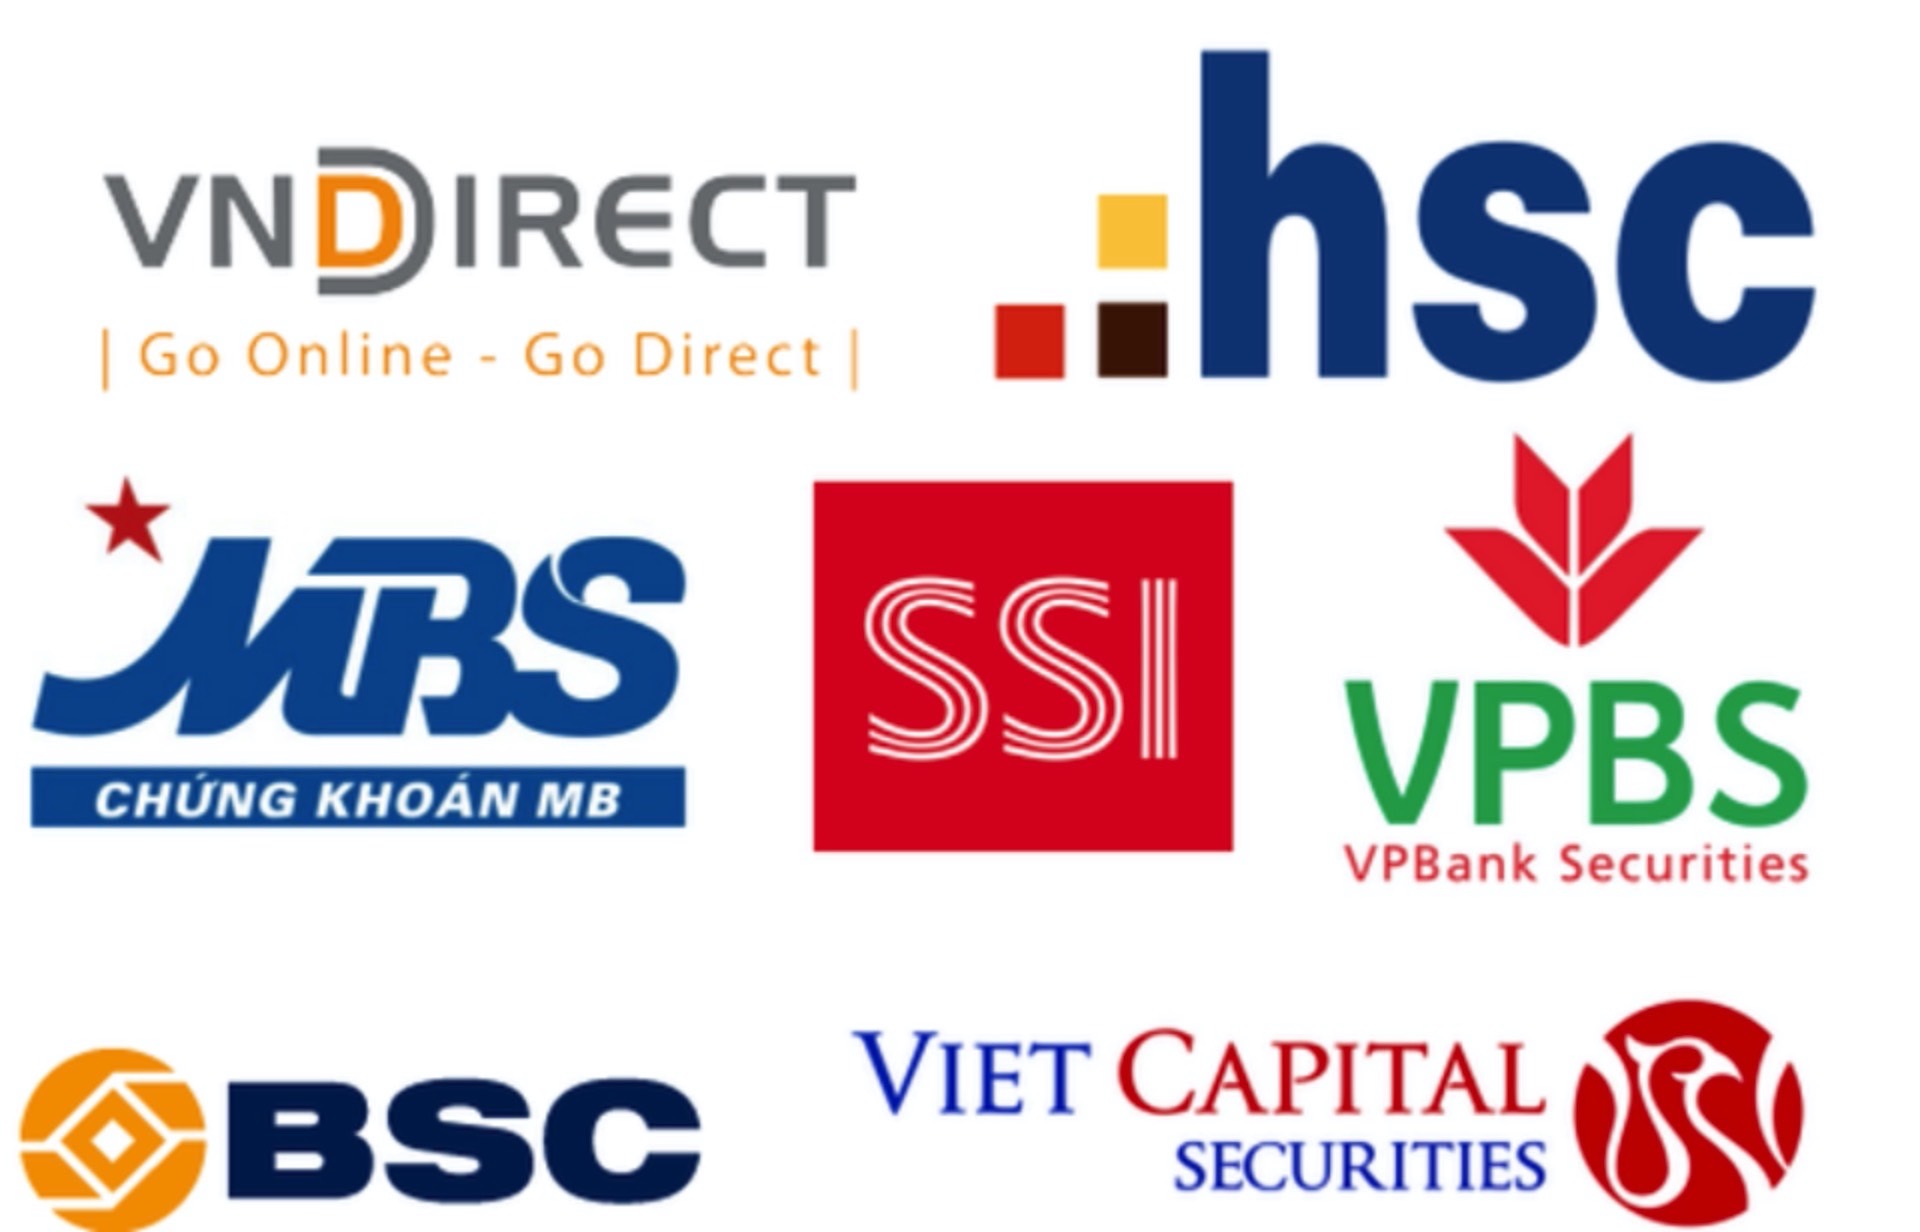 Danh sách các công ty chứng khoán ở Việt Nam? Xếp hạng các công ty theo vốn điều lệ